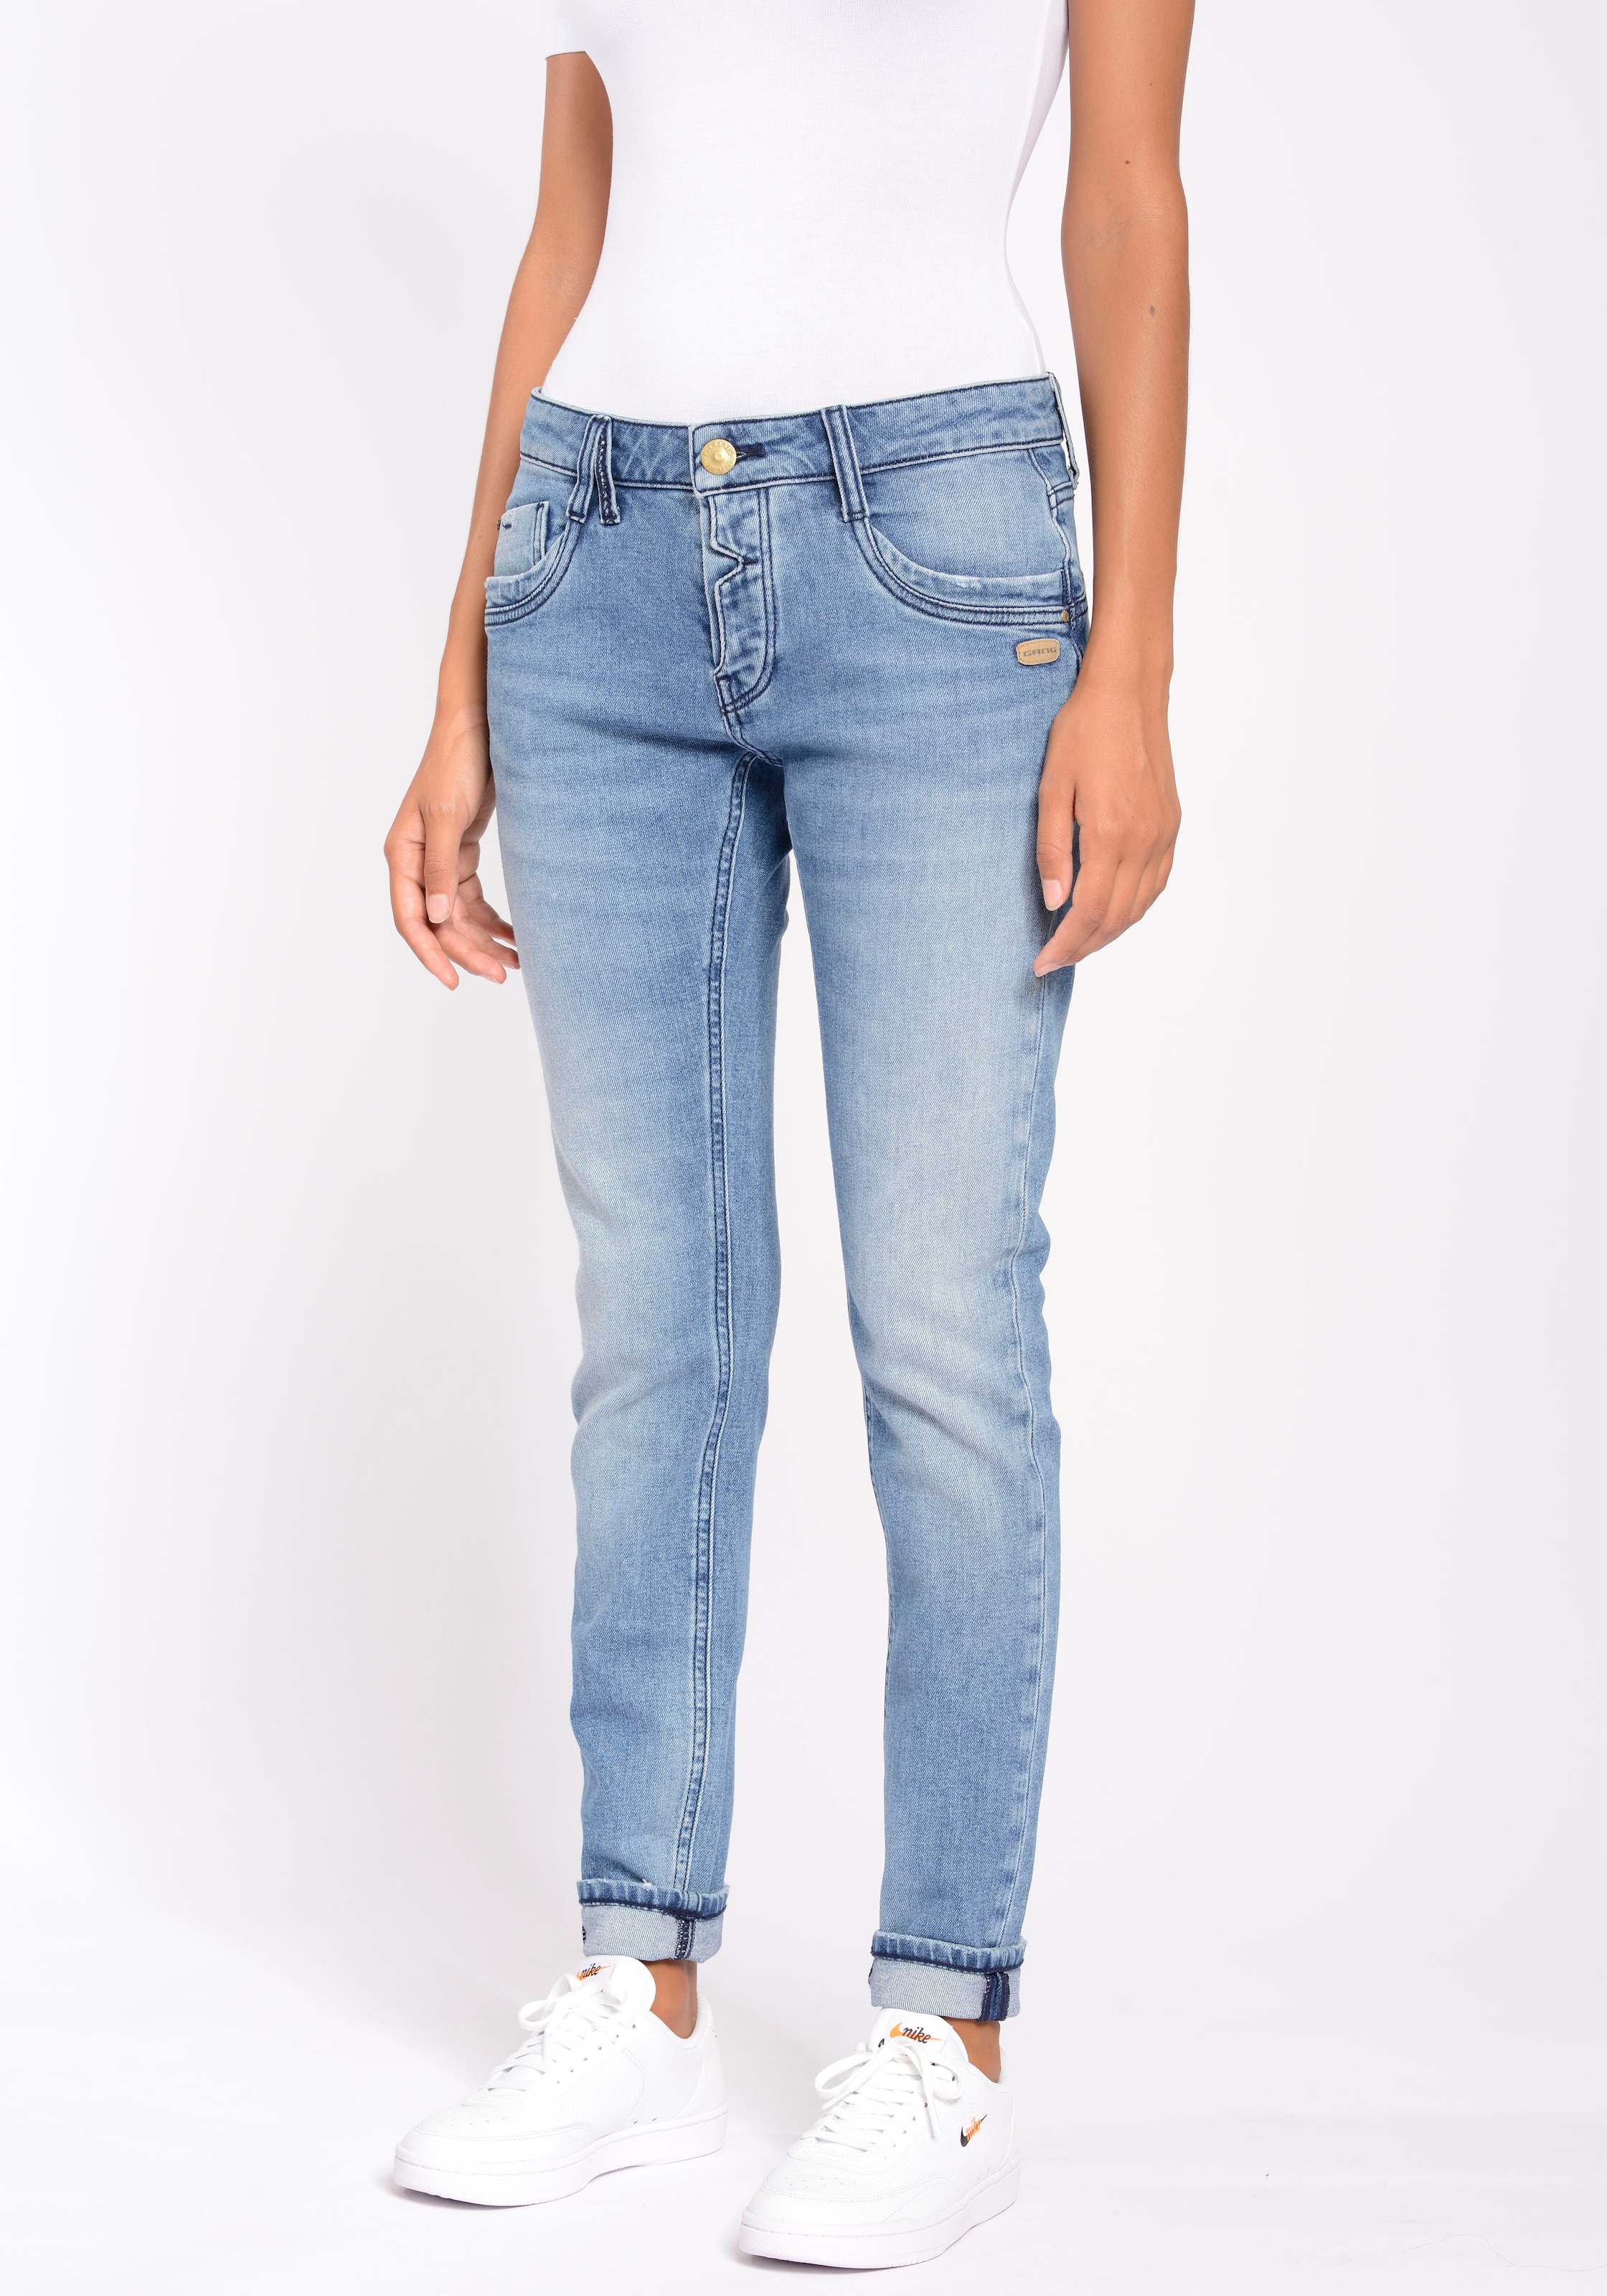 GANG Relax-fit-Jeans LINE OTTO Online mit ECO und Shop Stretch »94GERDA Bio-Baumwolle kaufen aus im CROTCH«, der DEEP